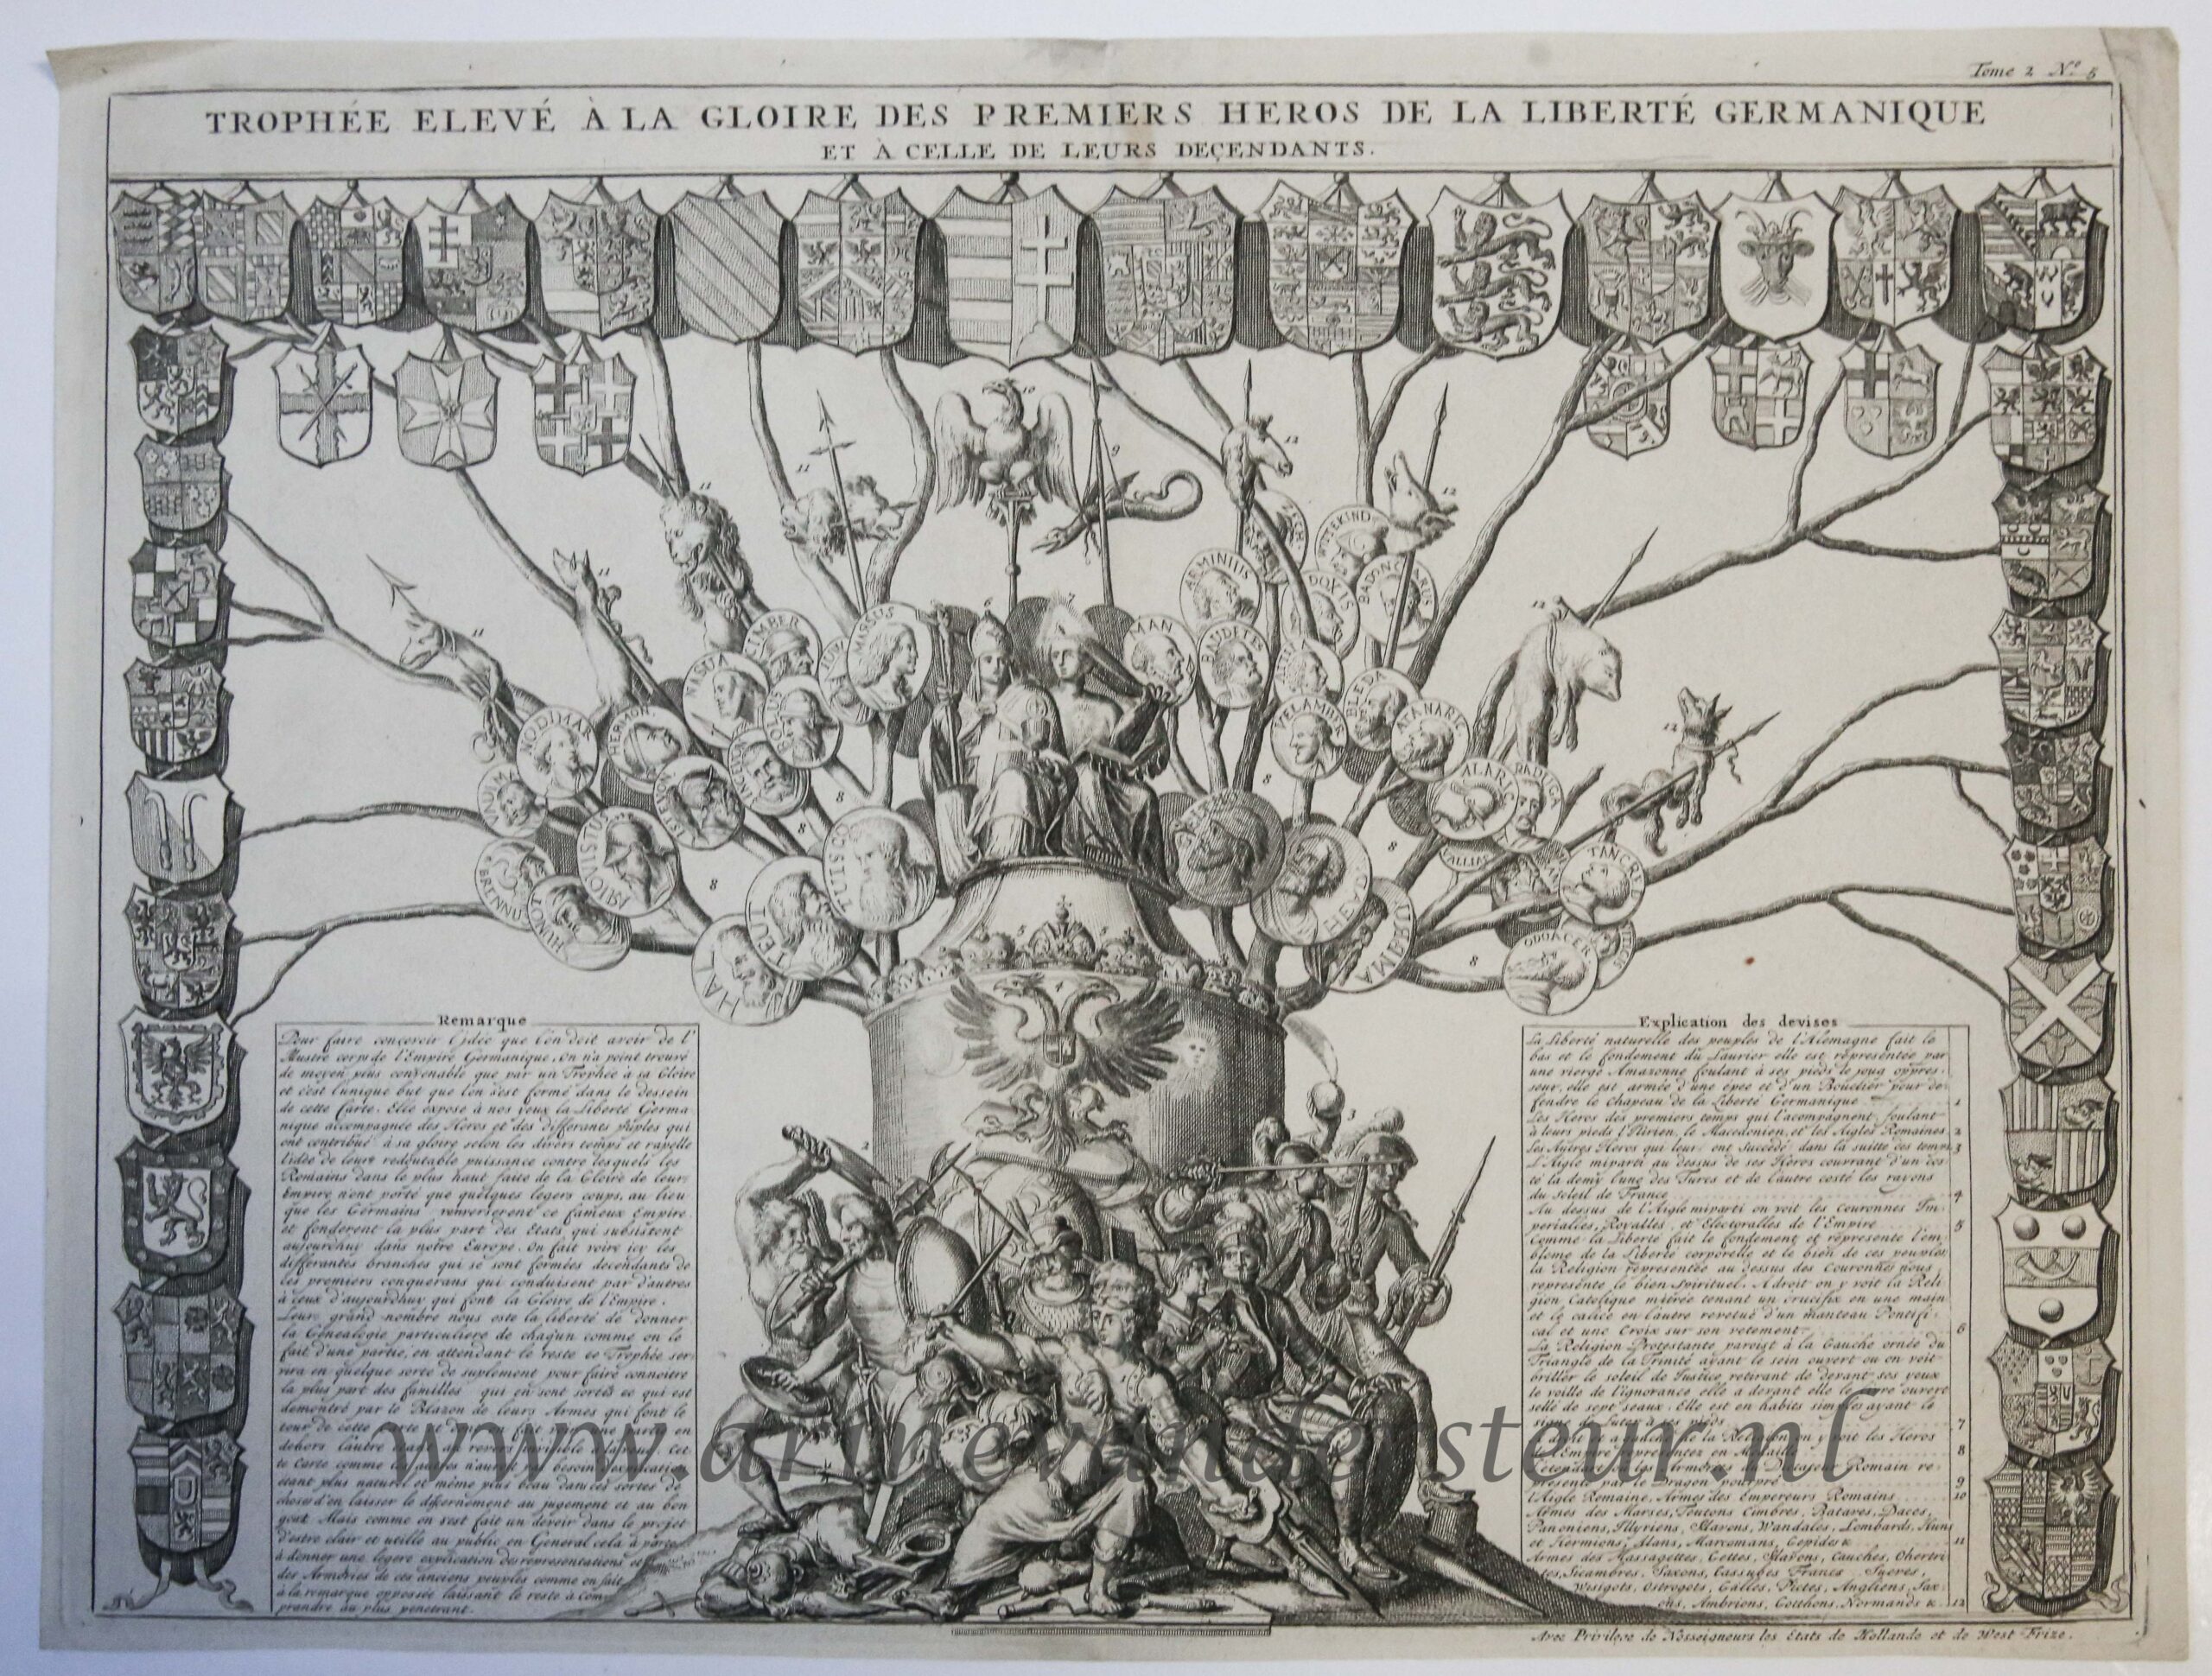 Henri Abraham Chatelain (1684-1743) - [Antique print, engraving, Germany] Trophee eleve a la gloire des premiers heros de la liberte Germanique, published ca. 1705-1720.